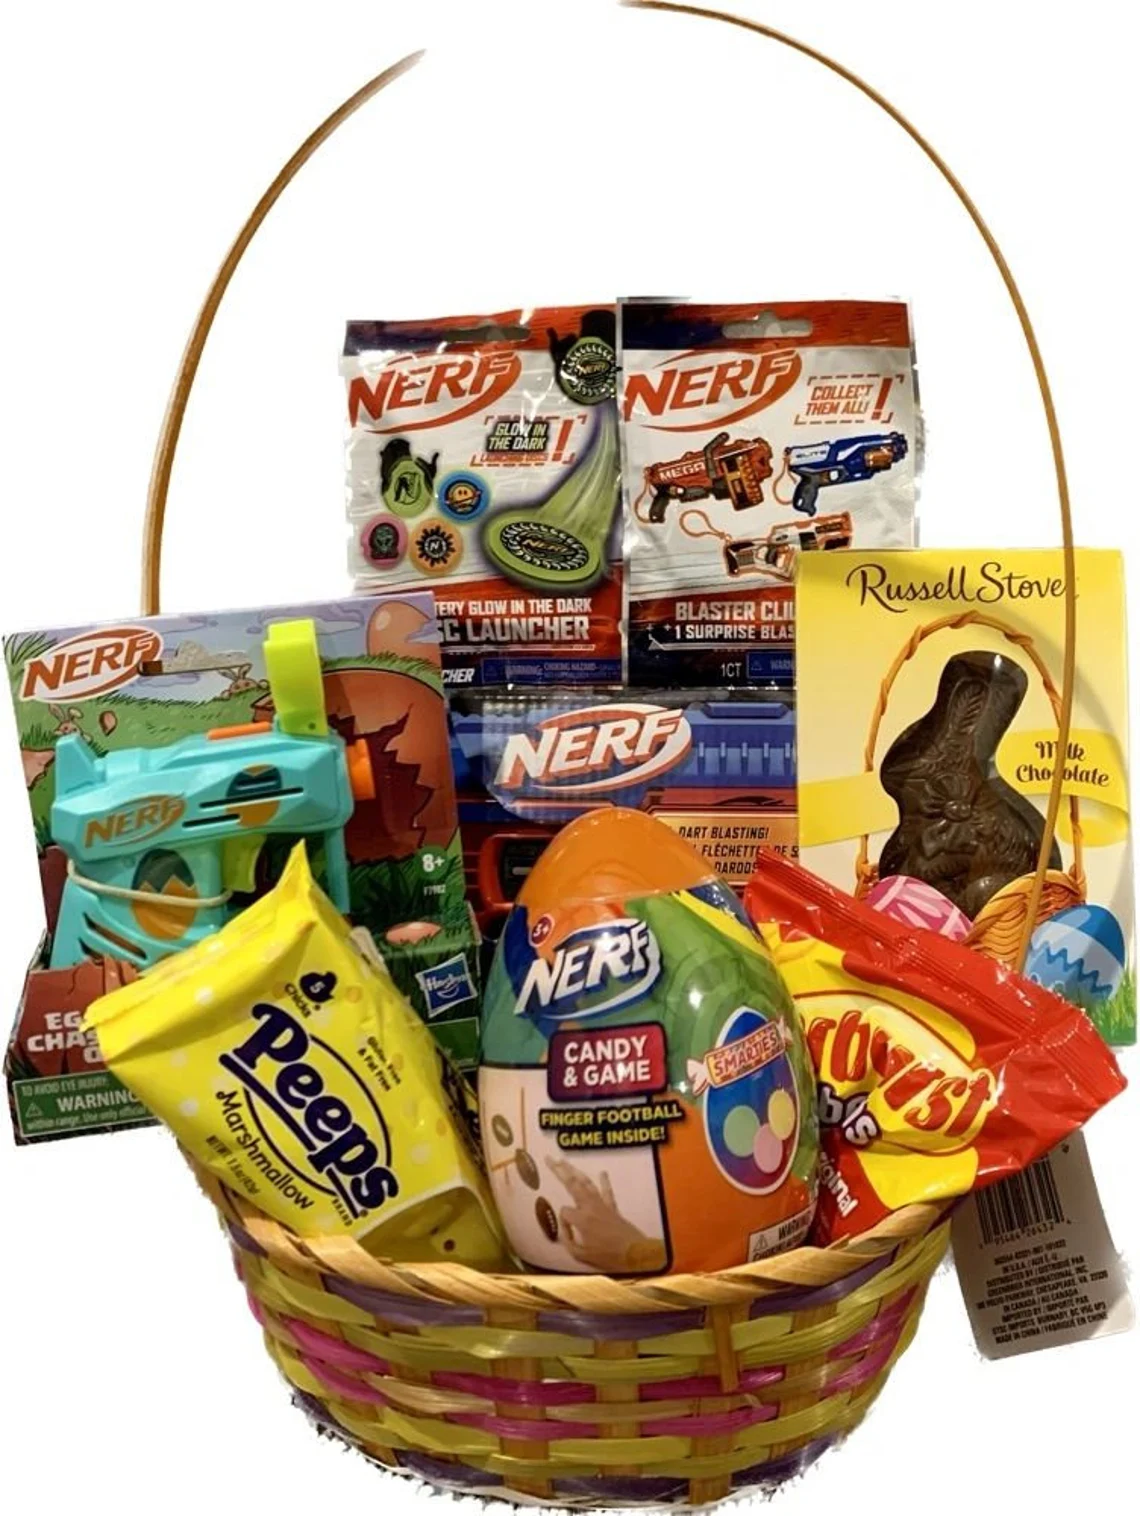 Nerf Item Bundle in Easter Basket - unique Easter gift for boy, teen, tween